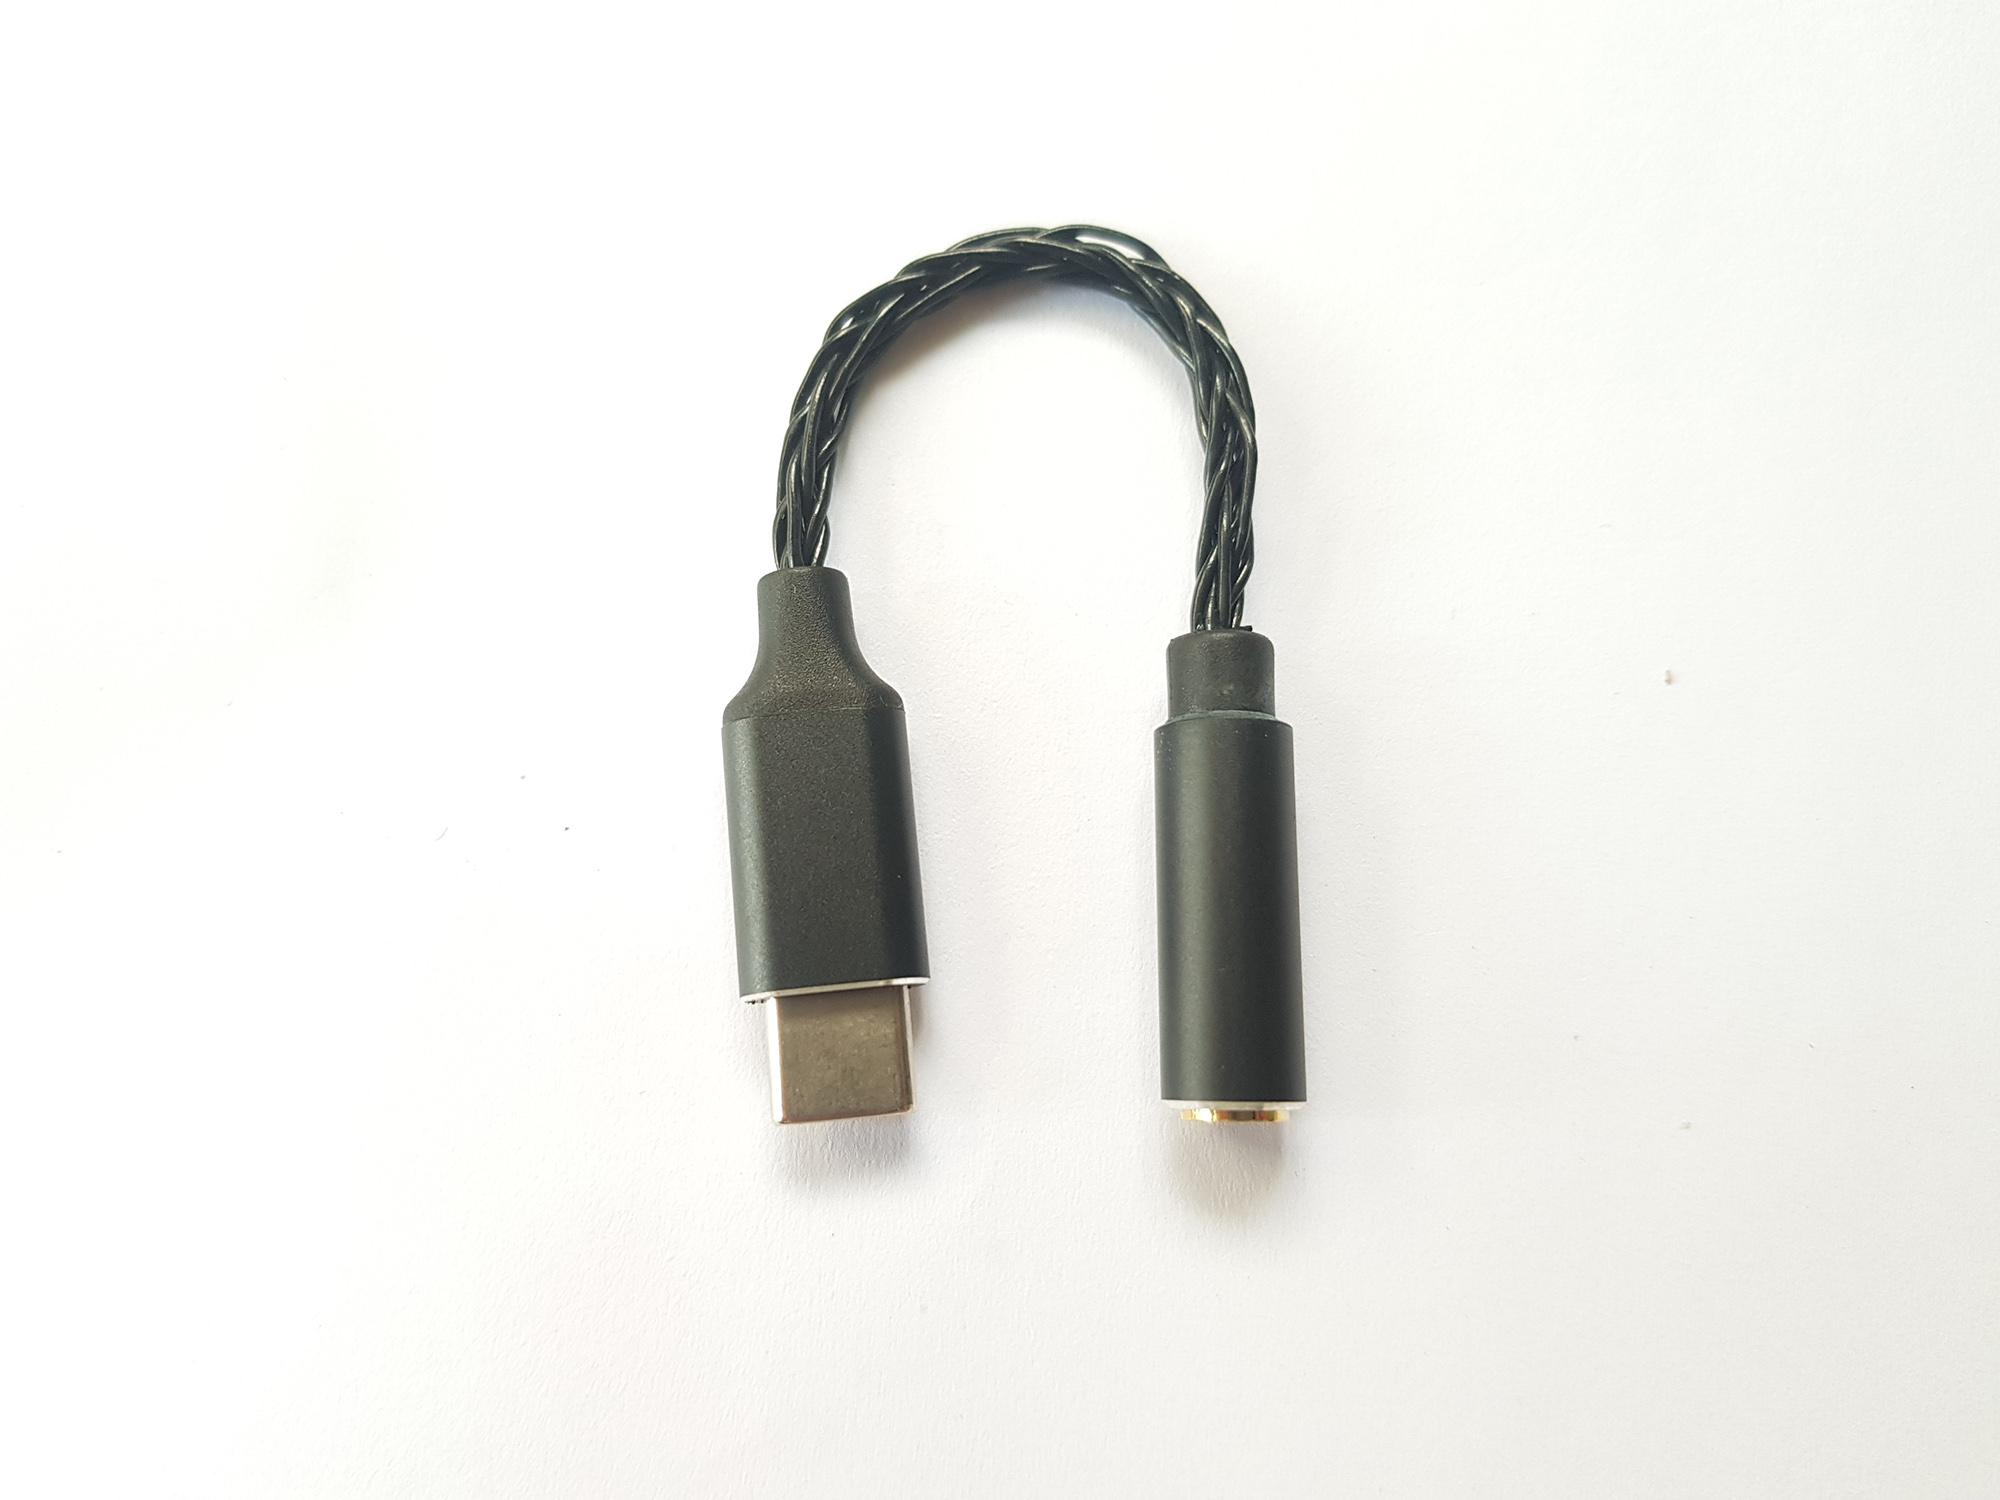 Cáp chuyển cổng Type C sang cổng 3.5mm chất lượng cao, dây mạ bạc 8 lõi, Chip CX21988 hô trợ âm thanh Hires